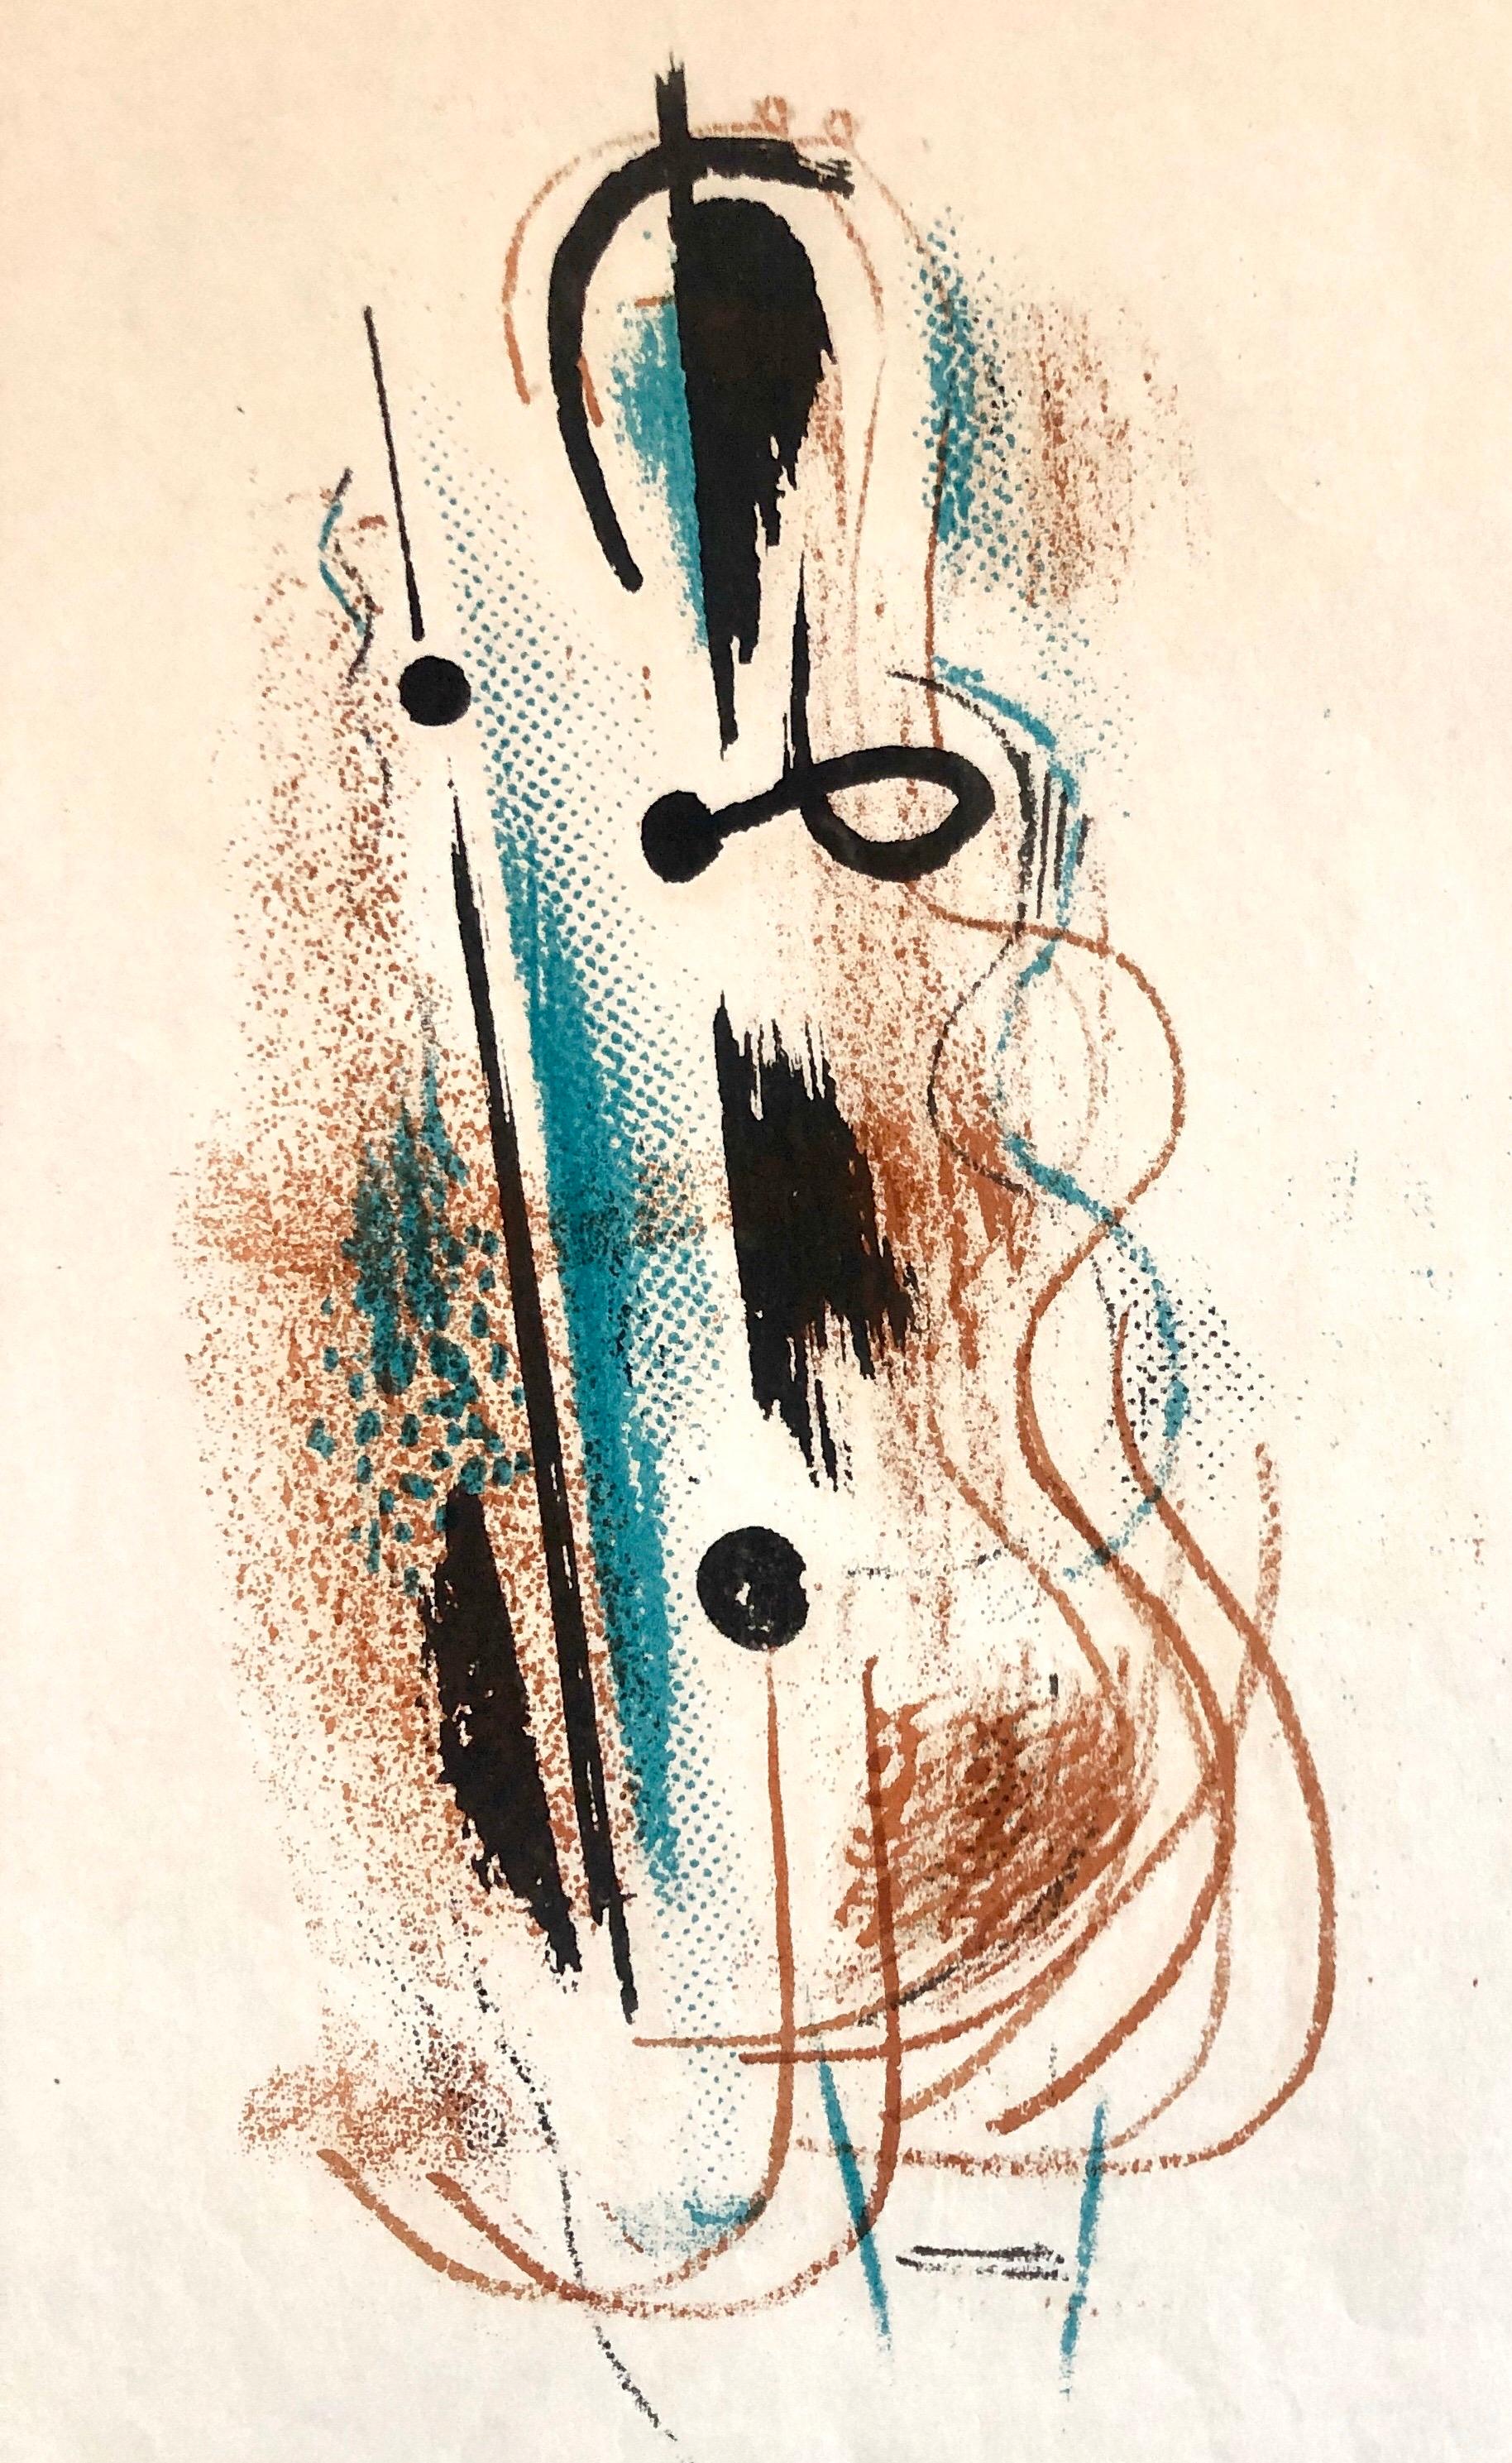 Composition abstraite de jazz des années 1940  Lithographie au crayon signée et datée par l'artiste WPA - Print de Konrad Cramer